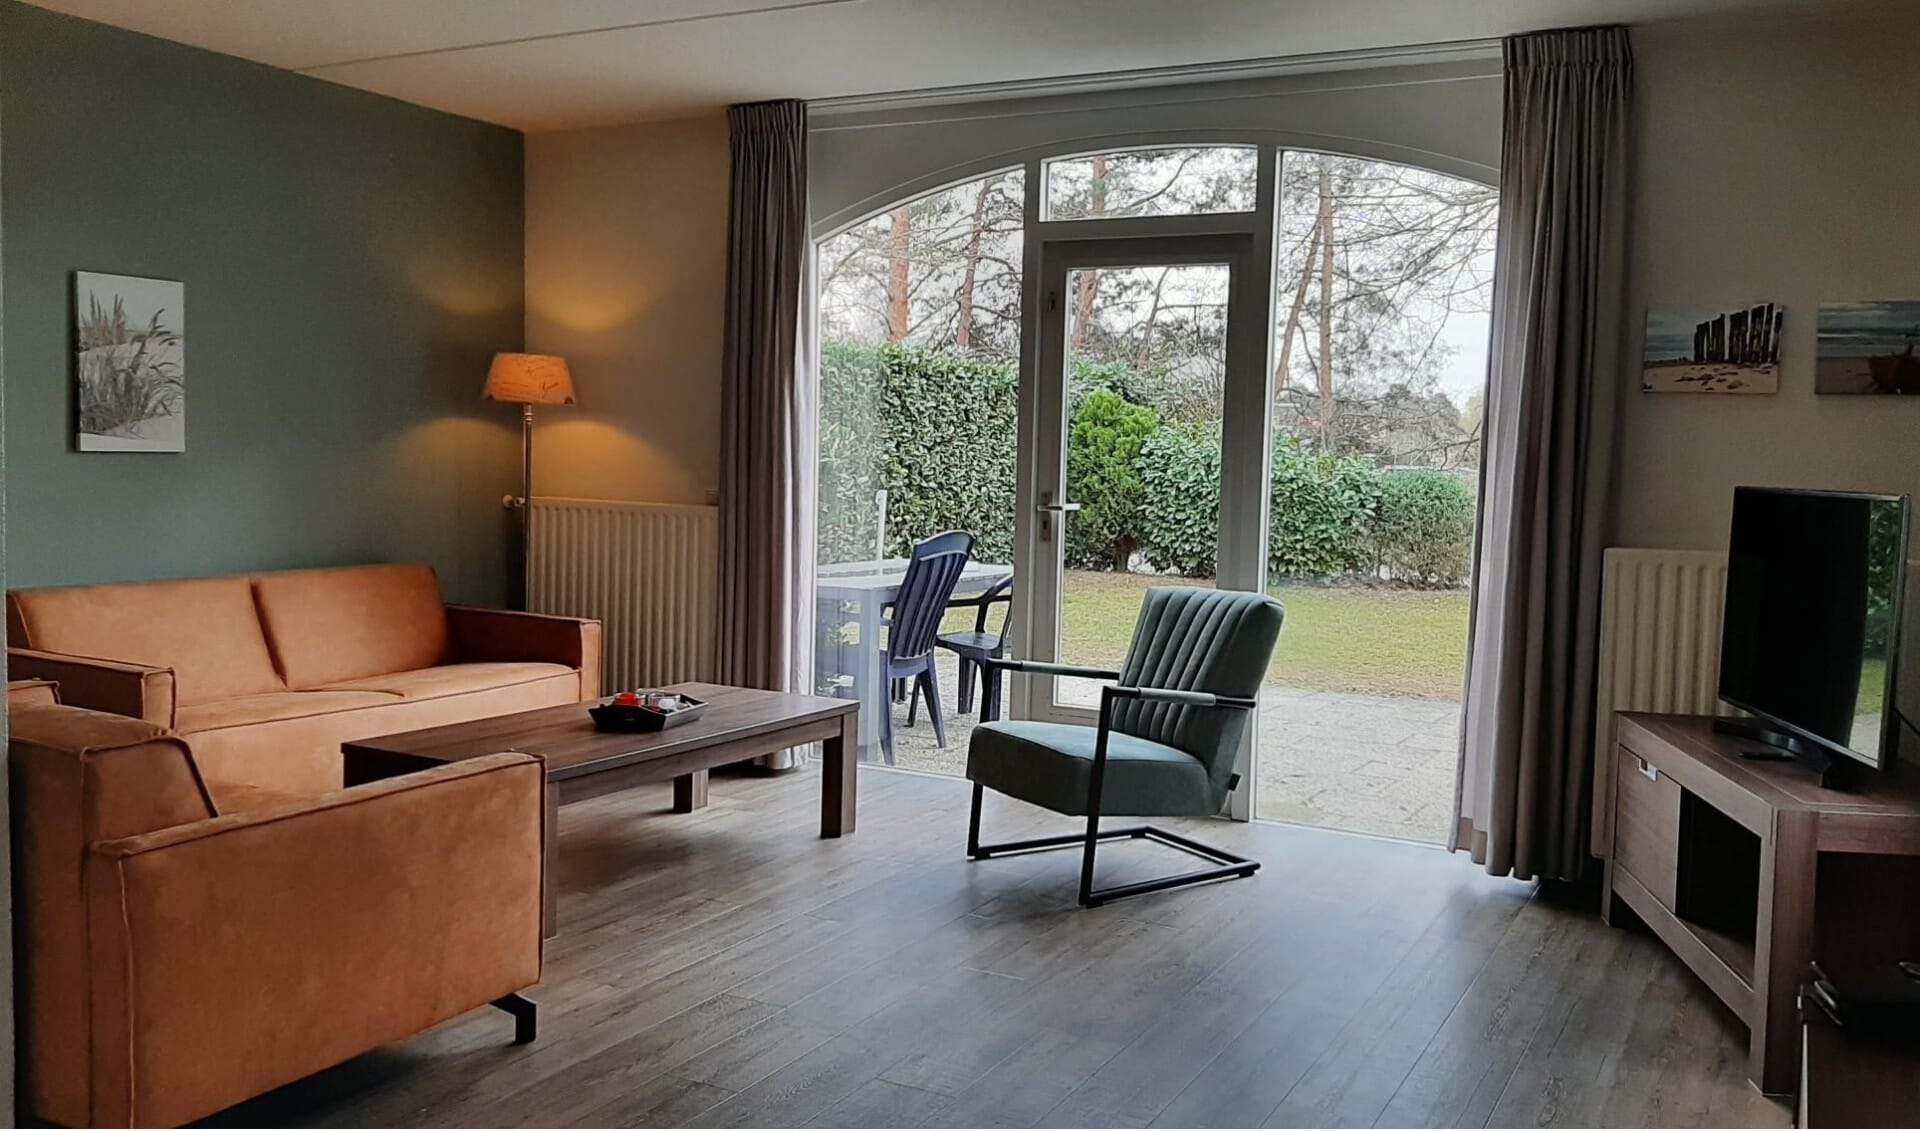 Mieten Sie ein freistehendes, kinder- und tierfreundliches Ferienhaus für 6 Personen in Limburg im Park Resort Arcen